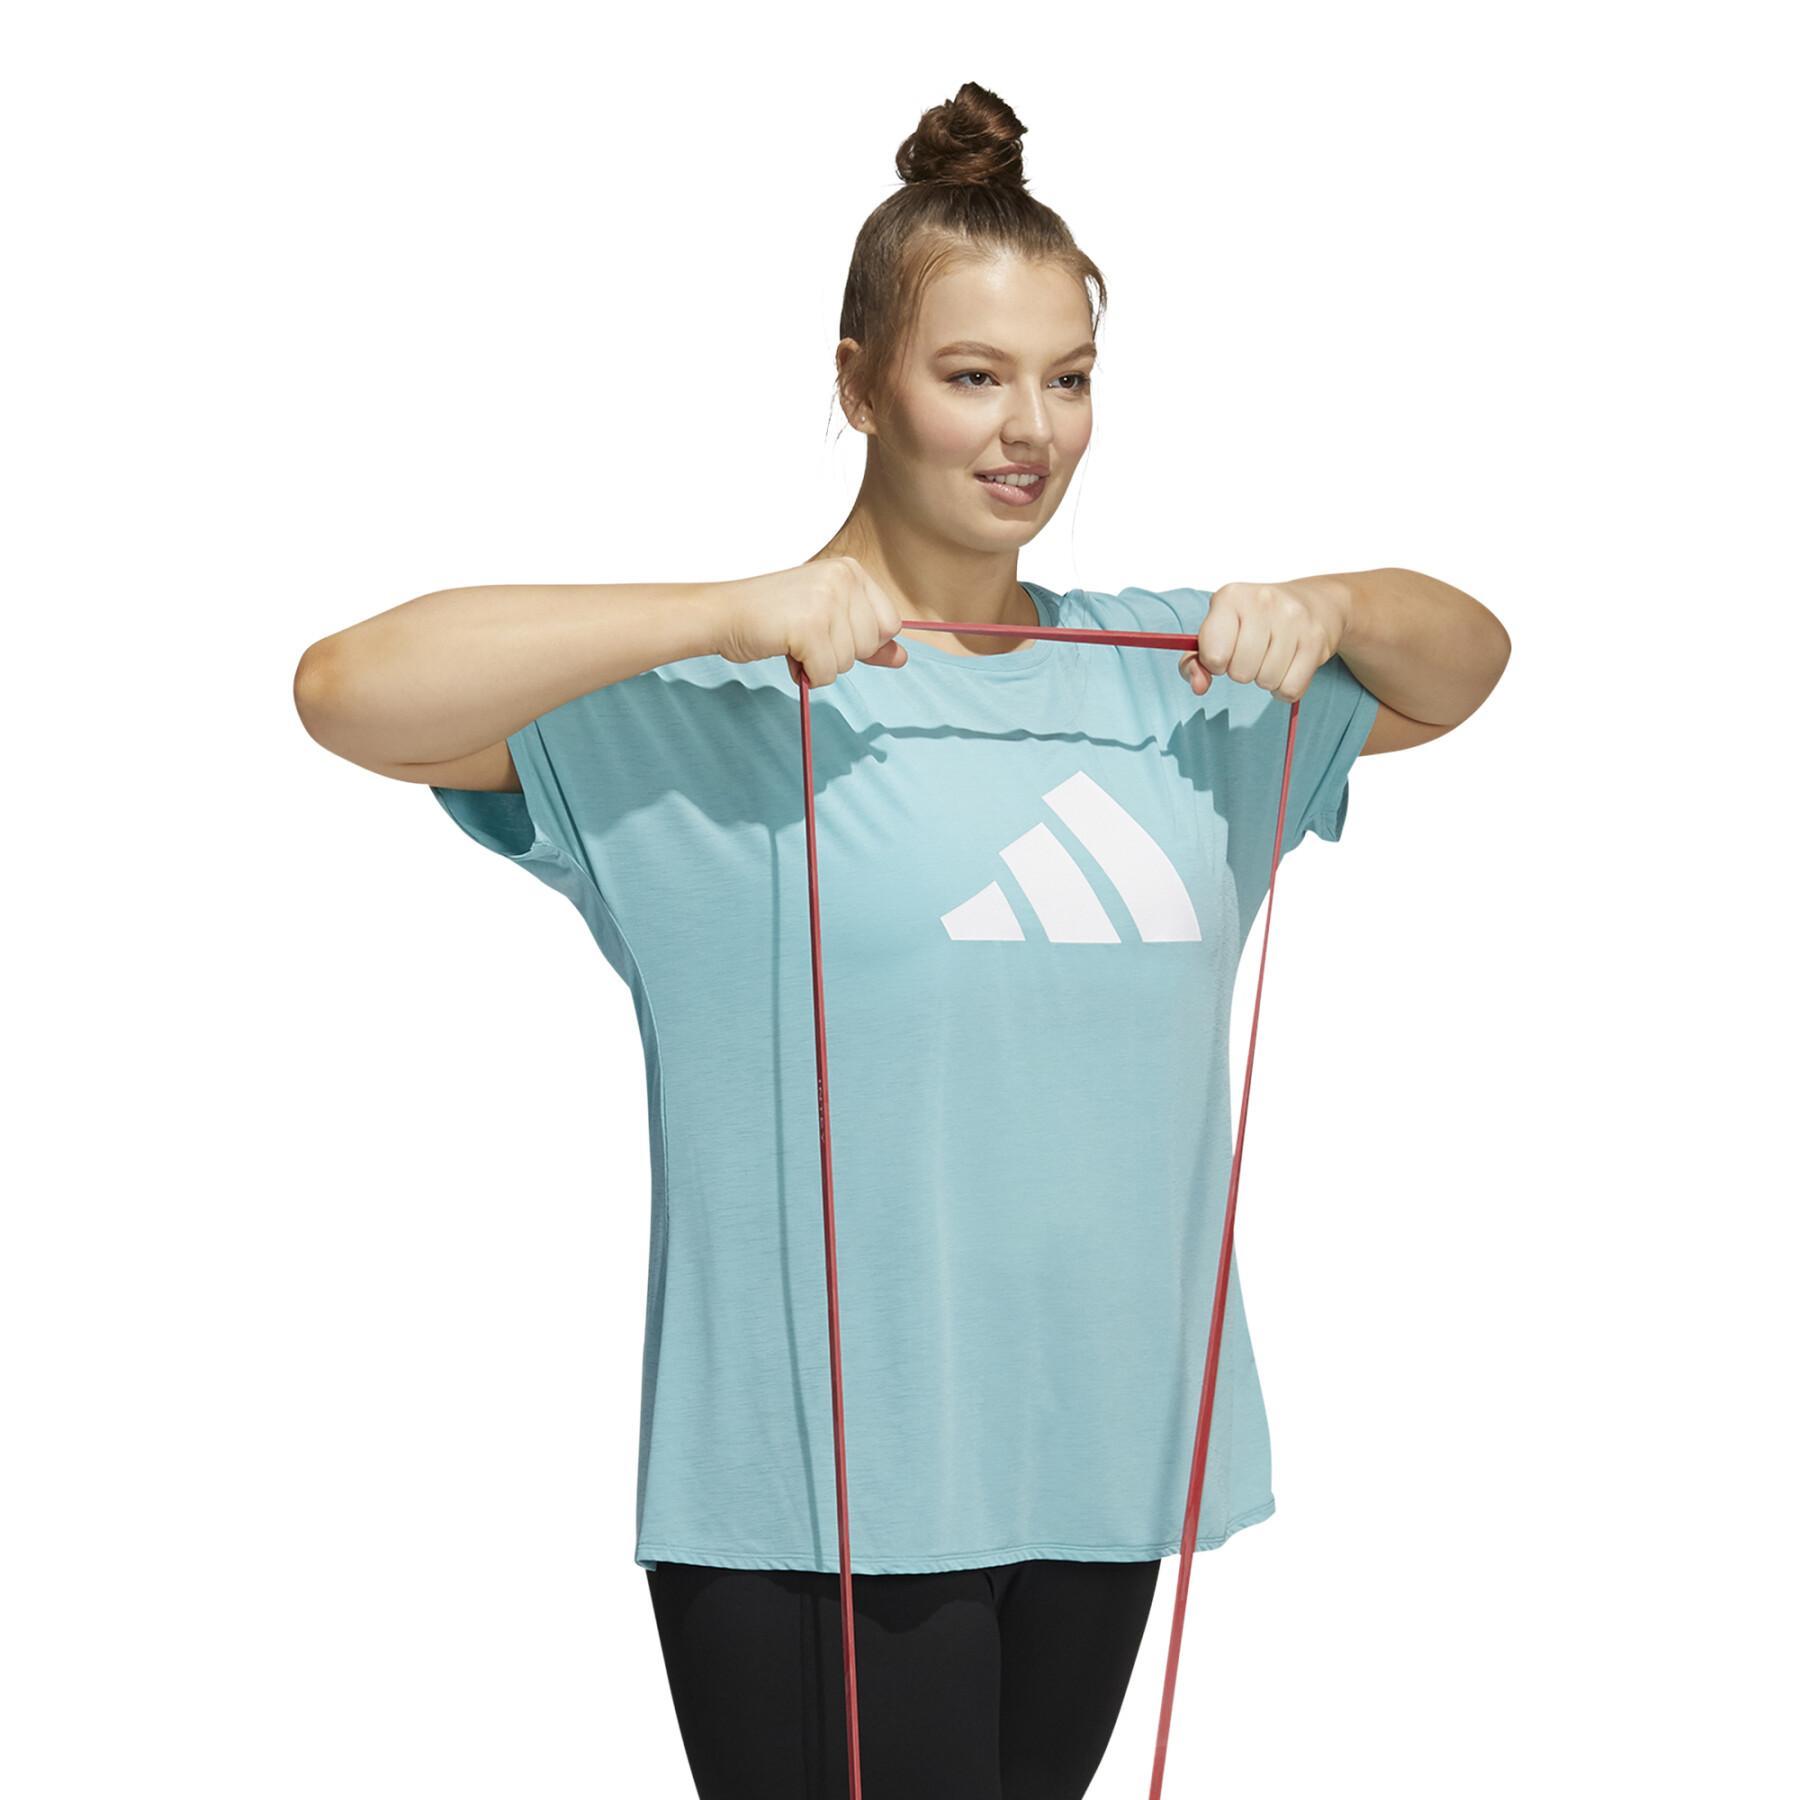 Koszulka damska w dużym rozmiarze adidas 3-Stripes Training